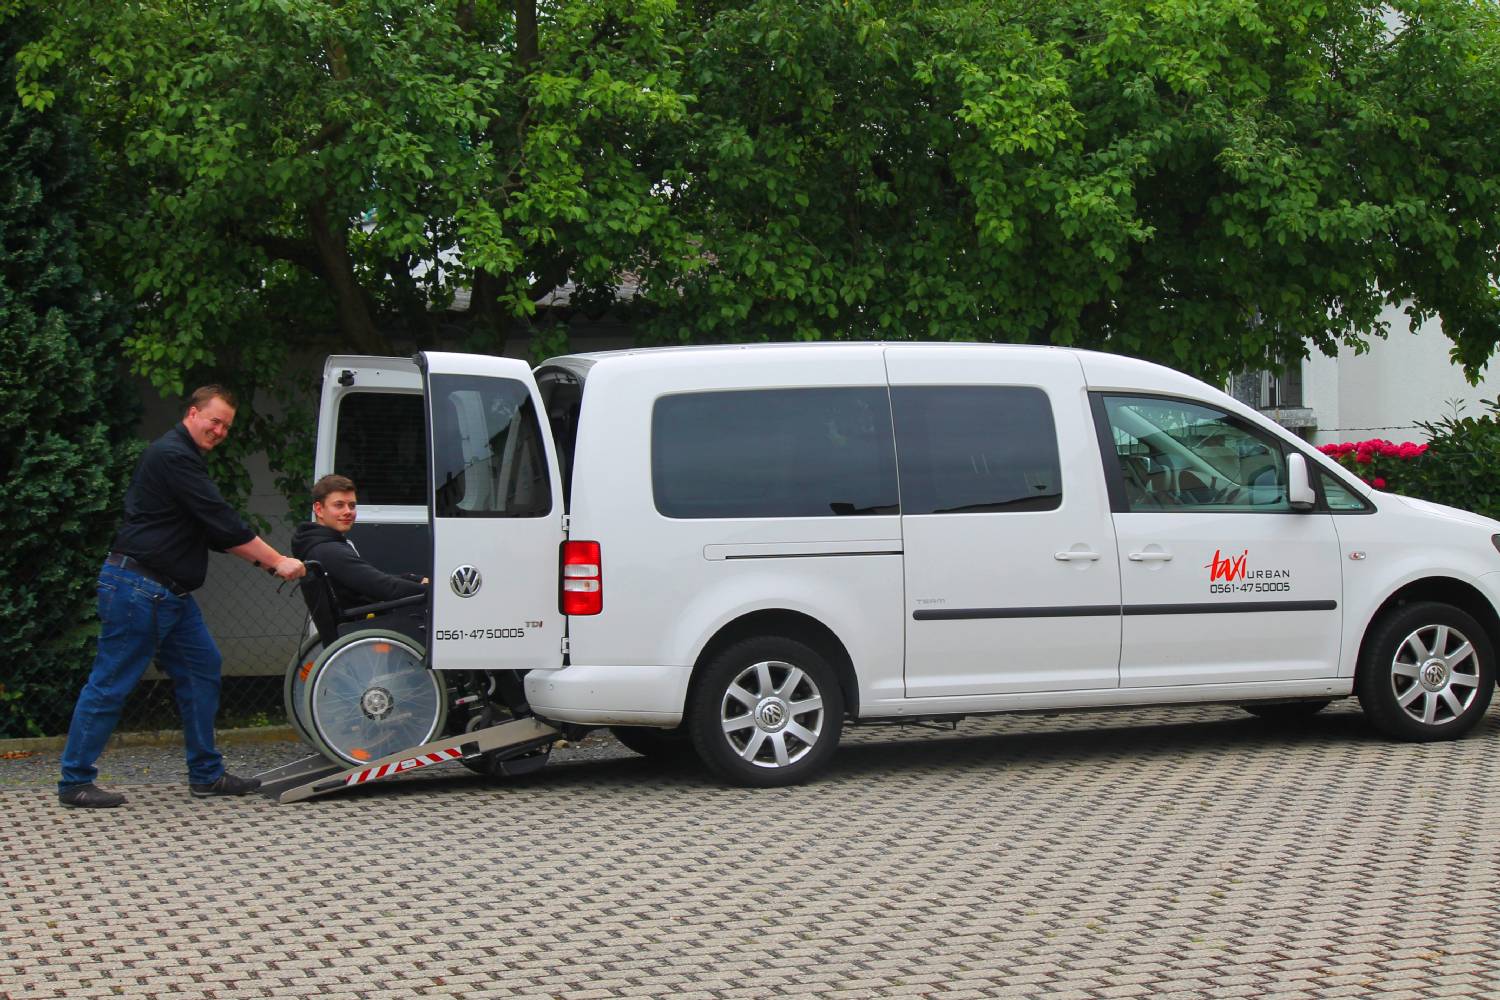 Zu unseren Leistungen gehören Taxifahrten, Krankenfahrten, Dialysefahrten, Bestrahlungsfahrten und Rollstuhltransporte in Kassel.